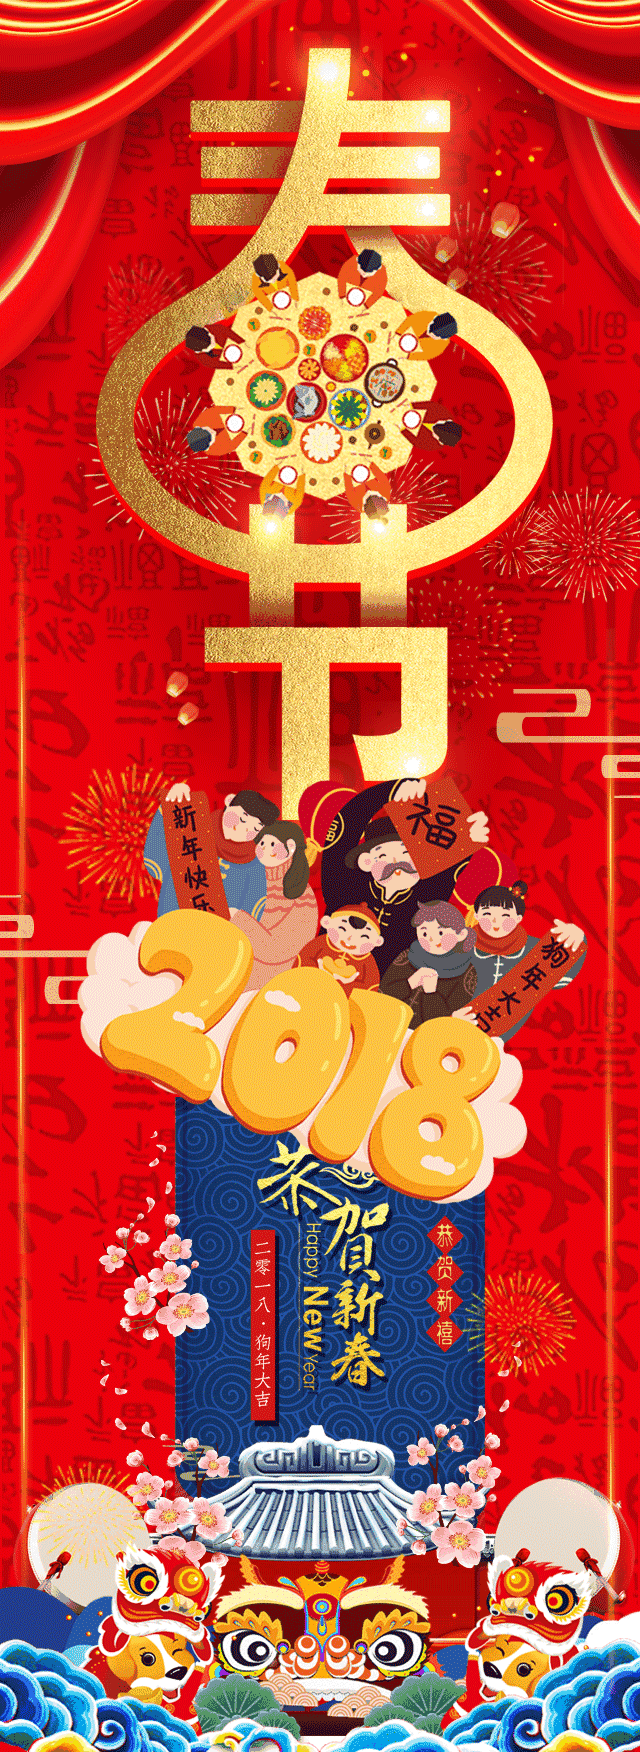 集团工会祝全体职工新春快乐!